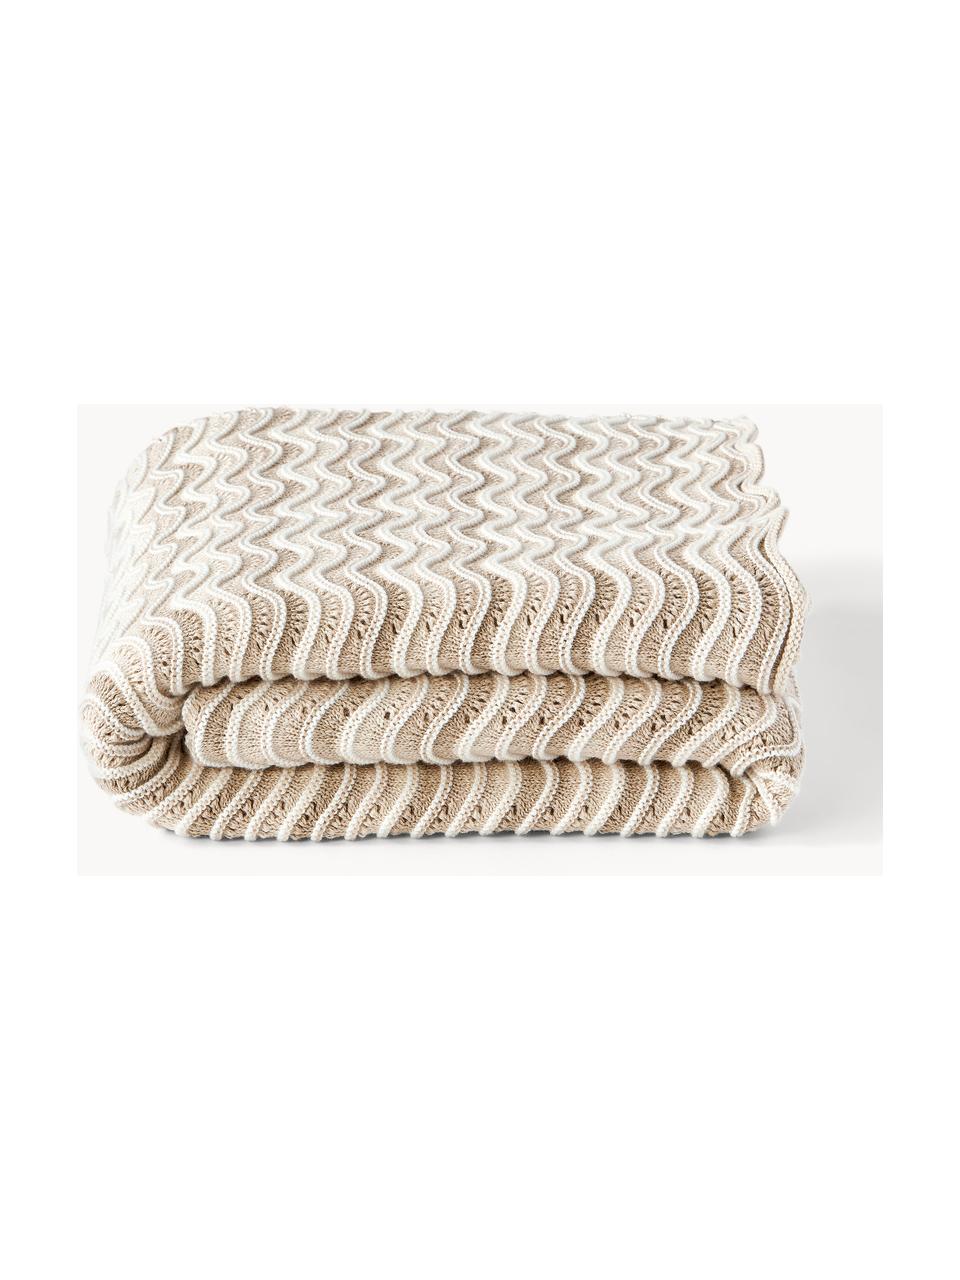 Pletený bavlněný pléd Emilio, 100 % bavlna, Světle béžová, tlumeně bílá, Š 130 cm, D 170 cm